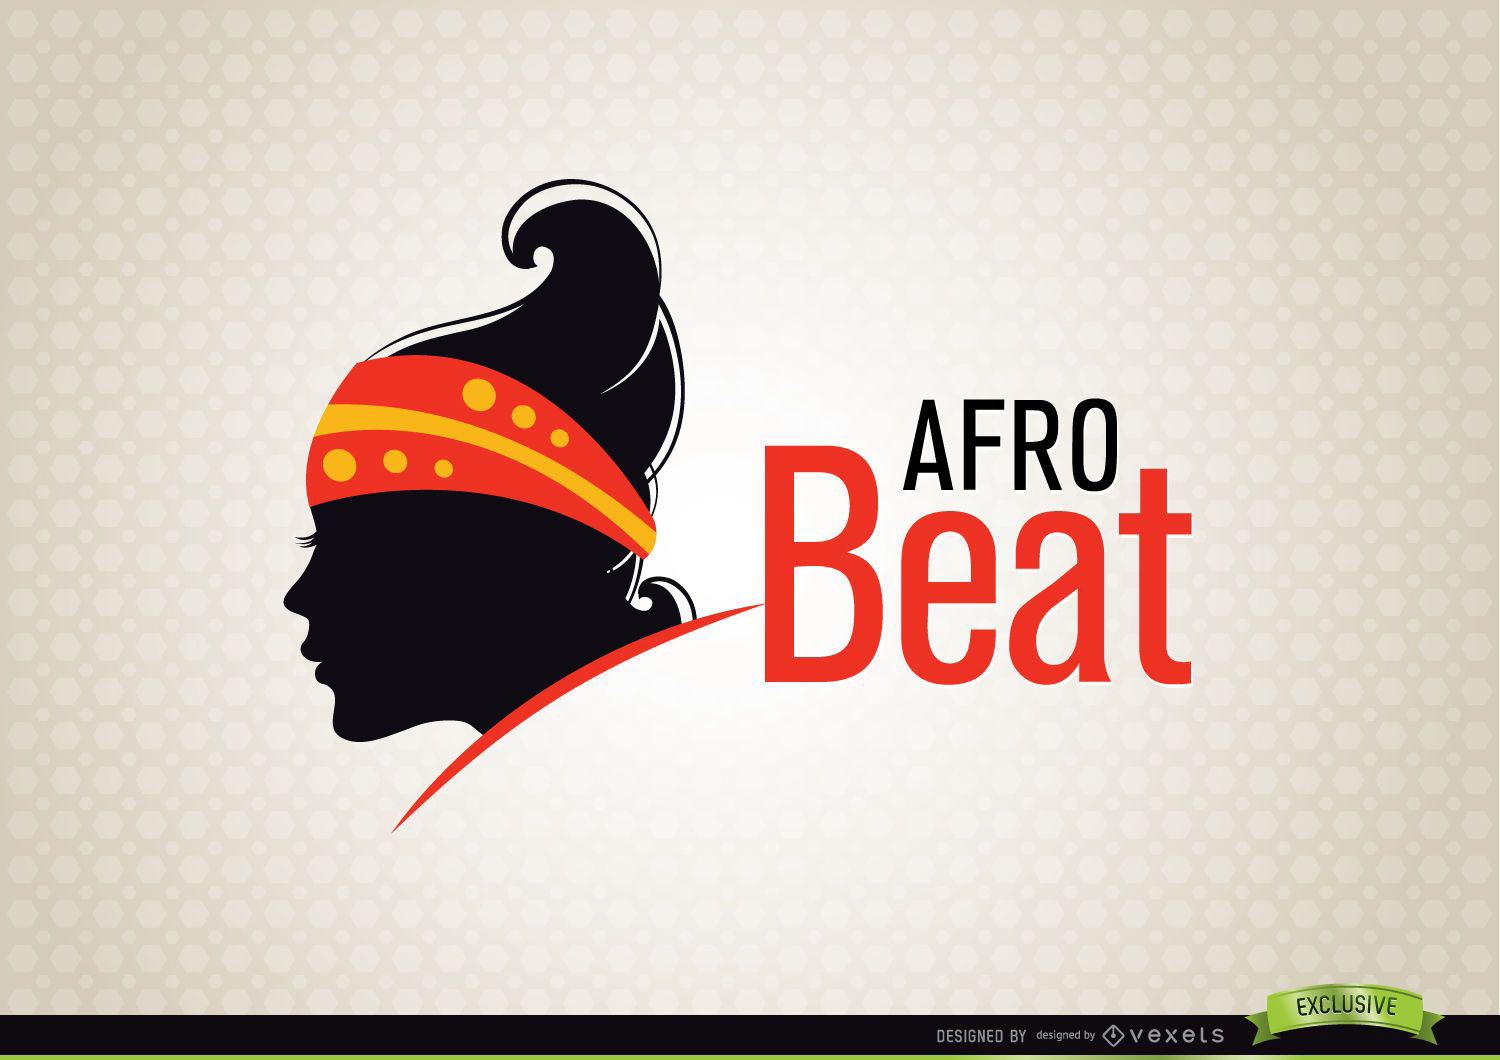 AfroBeat Woman Fashion Logo